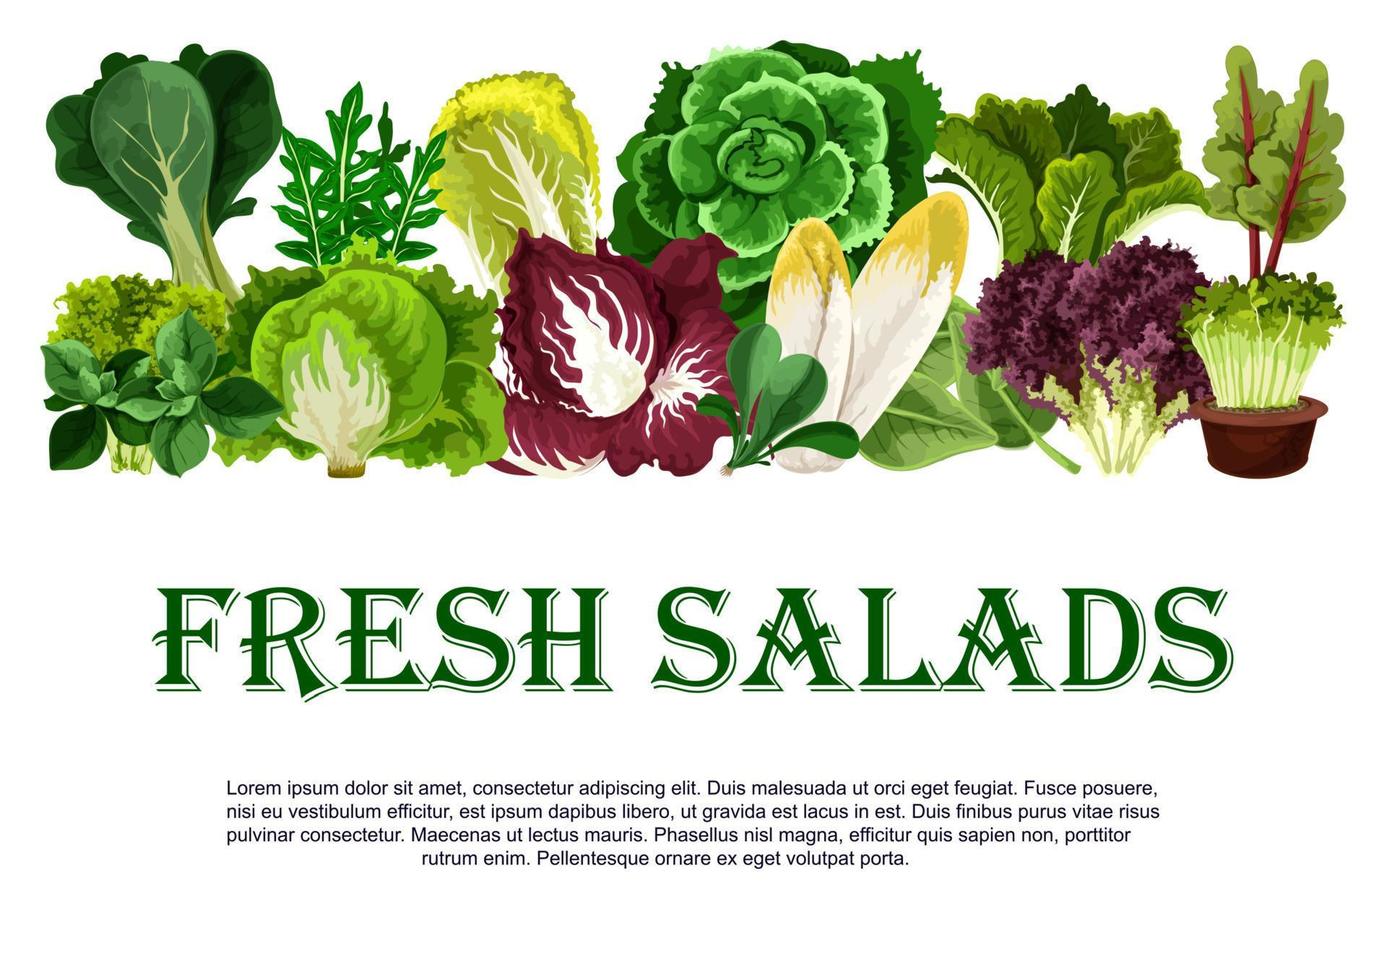 cartaz vetorial de vegetais folhosos de saladas frescas vetor